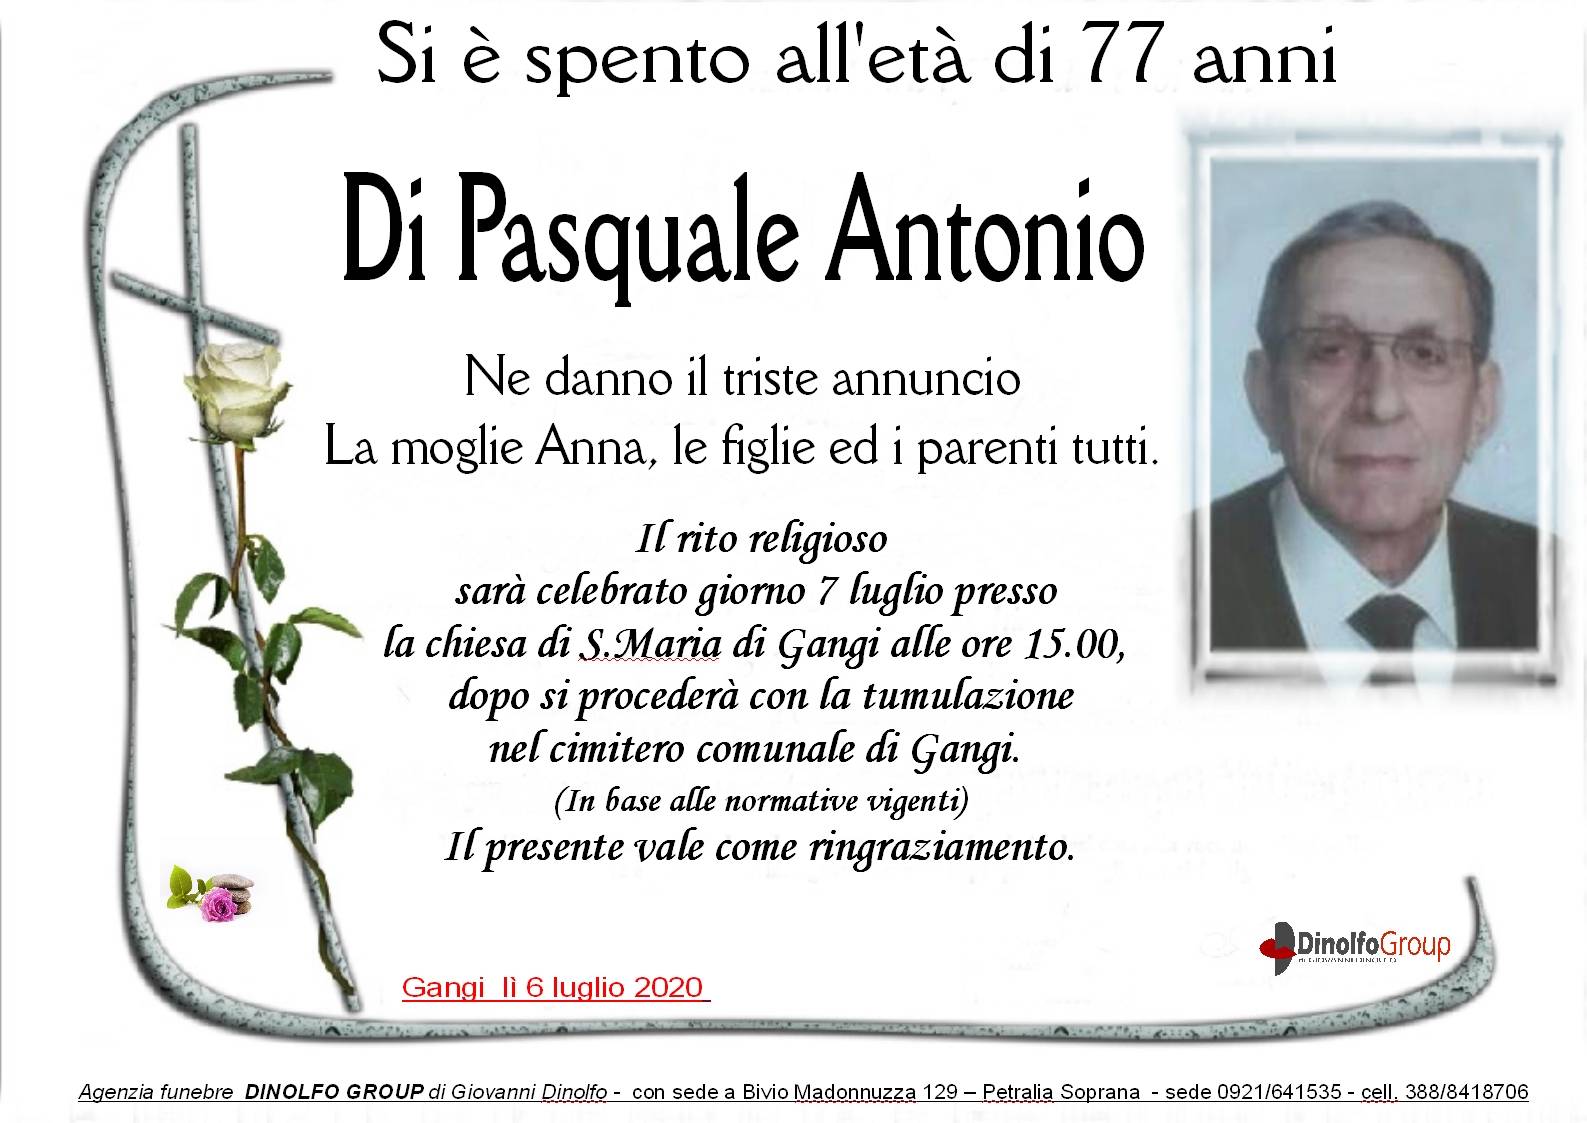 Antonio Di Pasquale